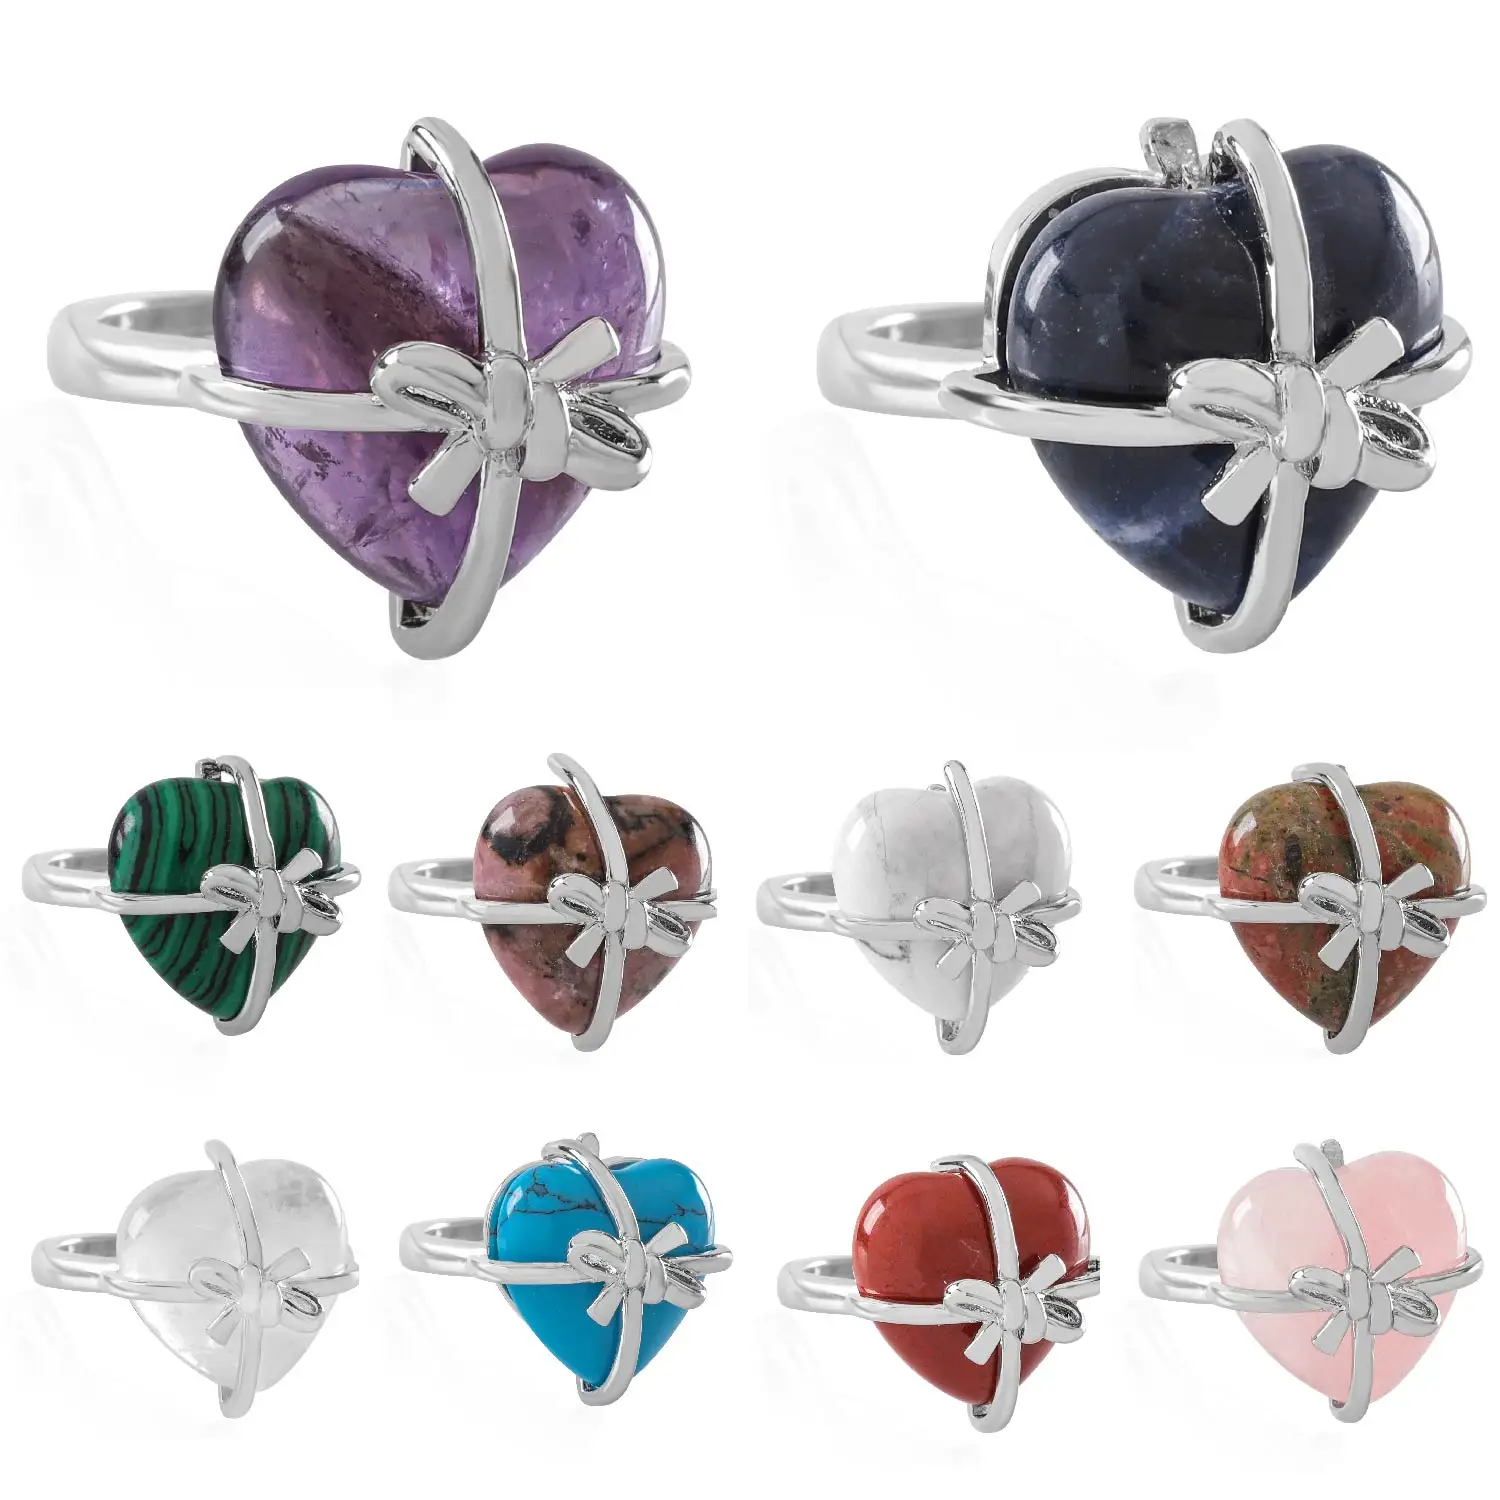 

VGDS кольцо с натуральным кристаллом в форме сердца, Европейская и американская мода для мужчин и женщин, очаровательное индивидуальное коль...